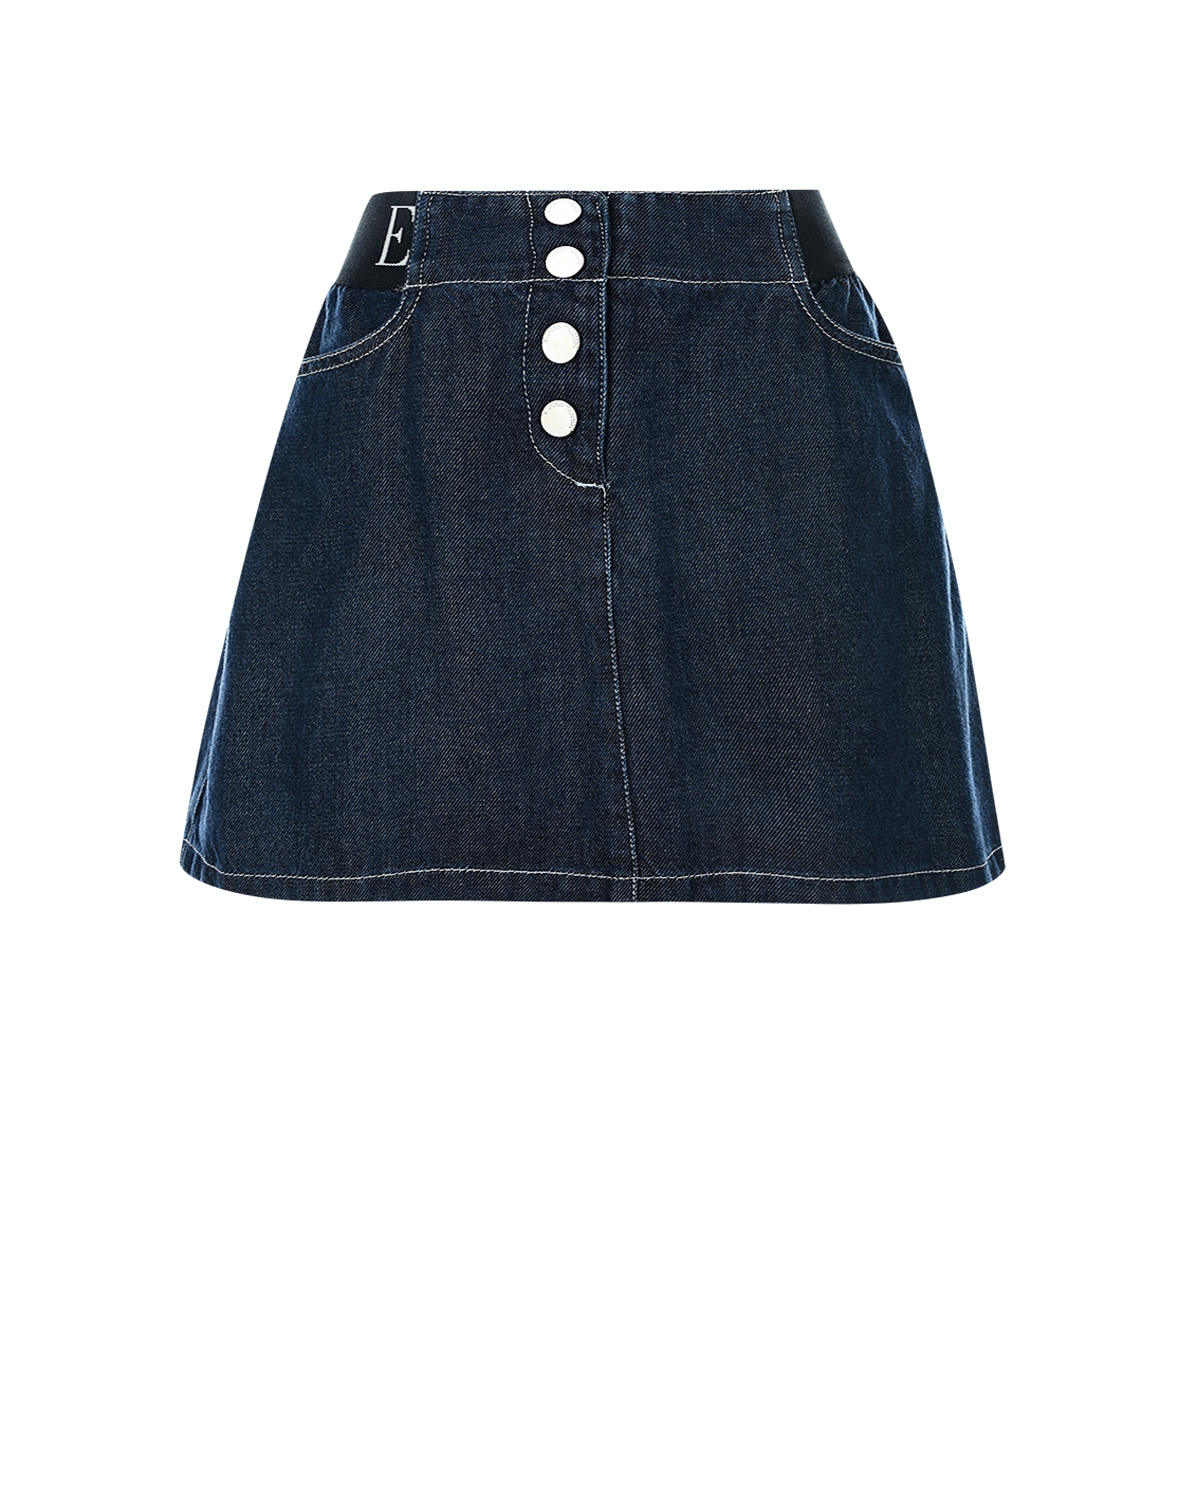 Джинсовая юбка Emporio Armani детская, размер 152, цвет синий - фото 1